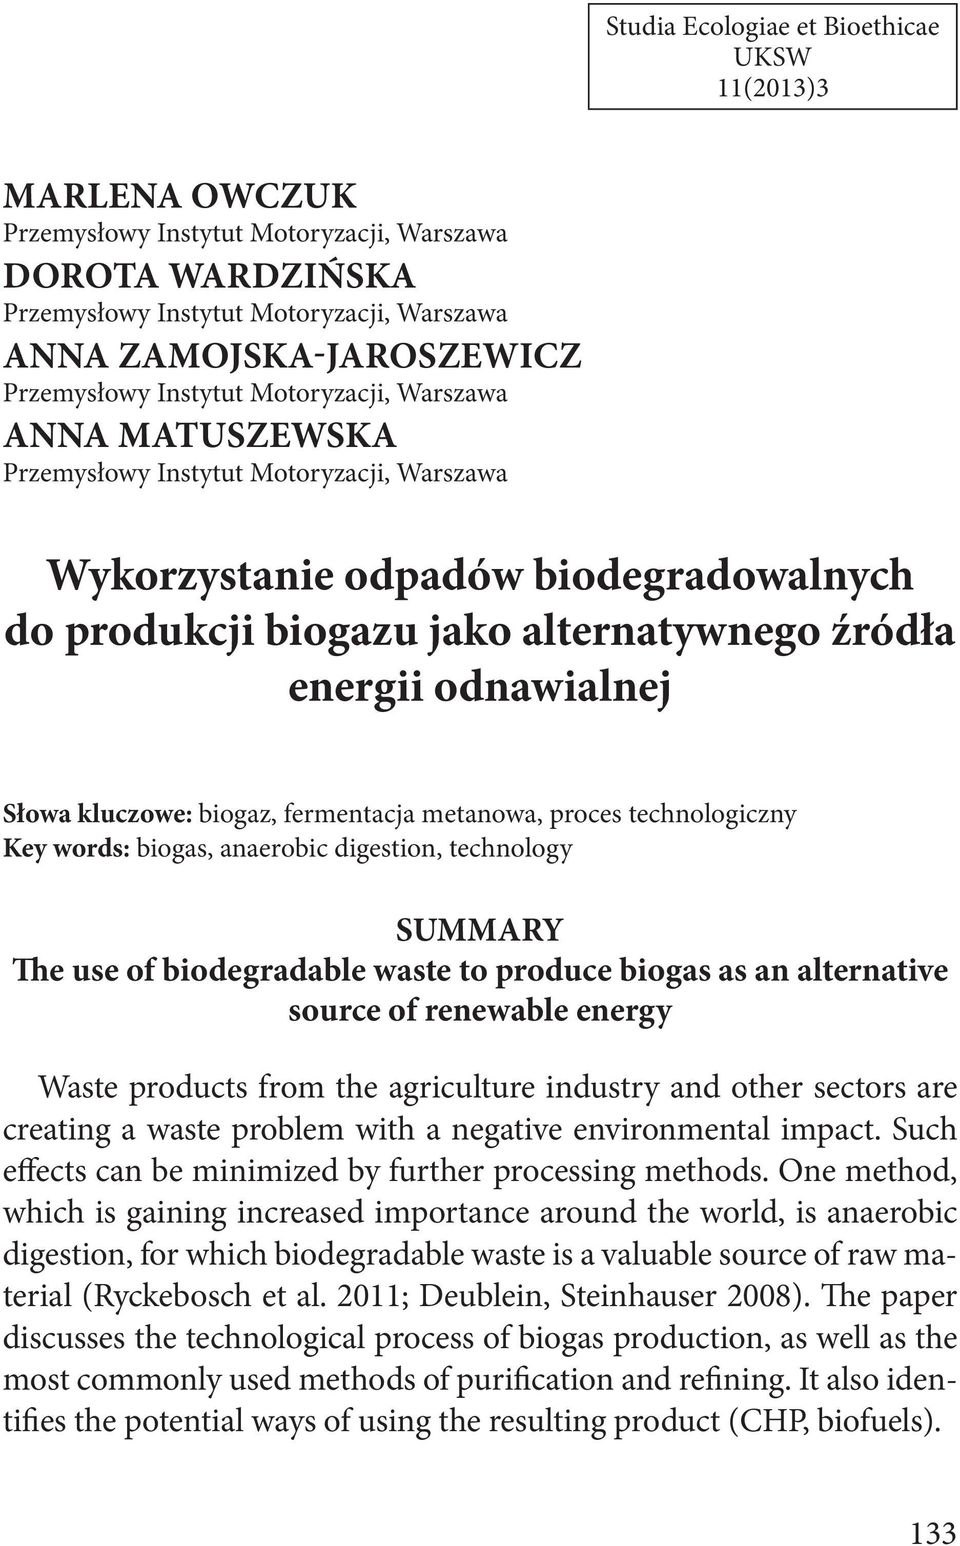 odnawialnej Słowa kluczowe: biogaz, fermentacja metanowa, proces technologiczny Key words: biogas, anaerobic digestion, technology SUMMARY The use of biodegradable waste to produce biogas as an